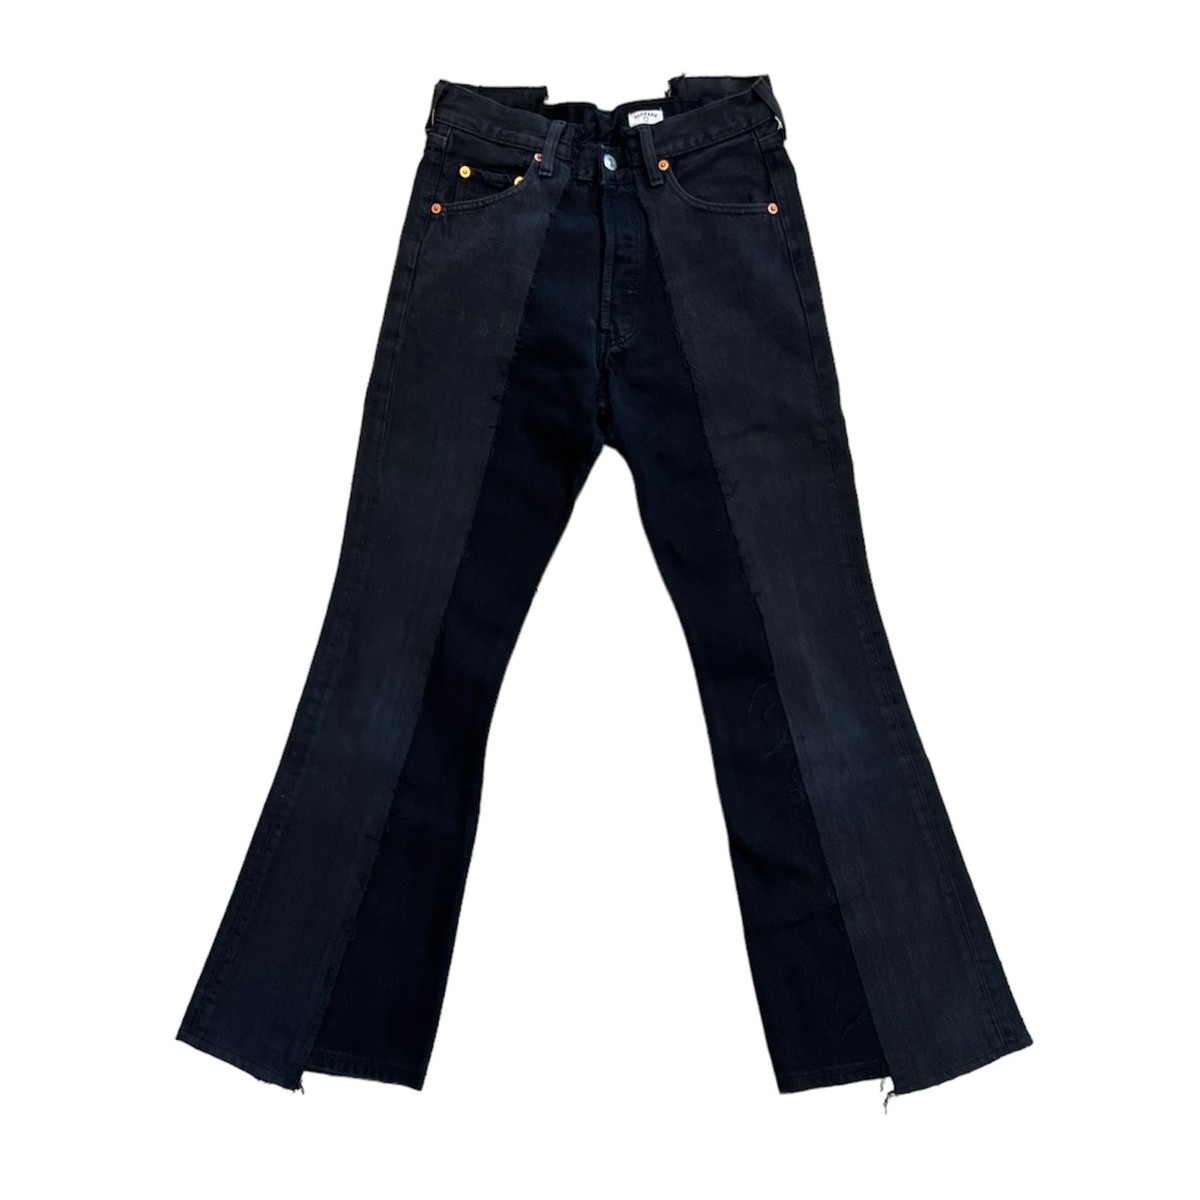 OLDPARK W pocket flare jeans black -S 1